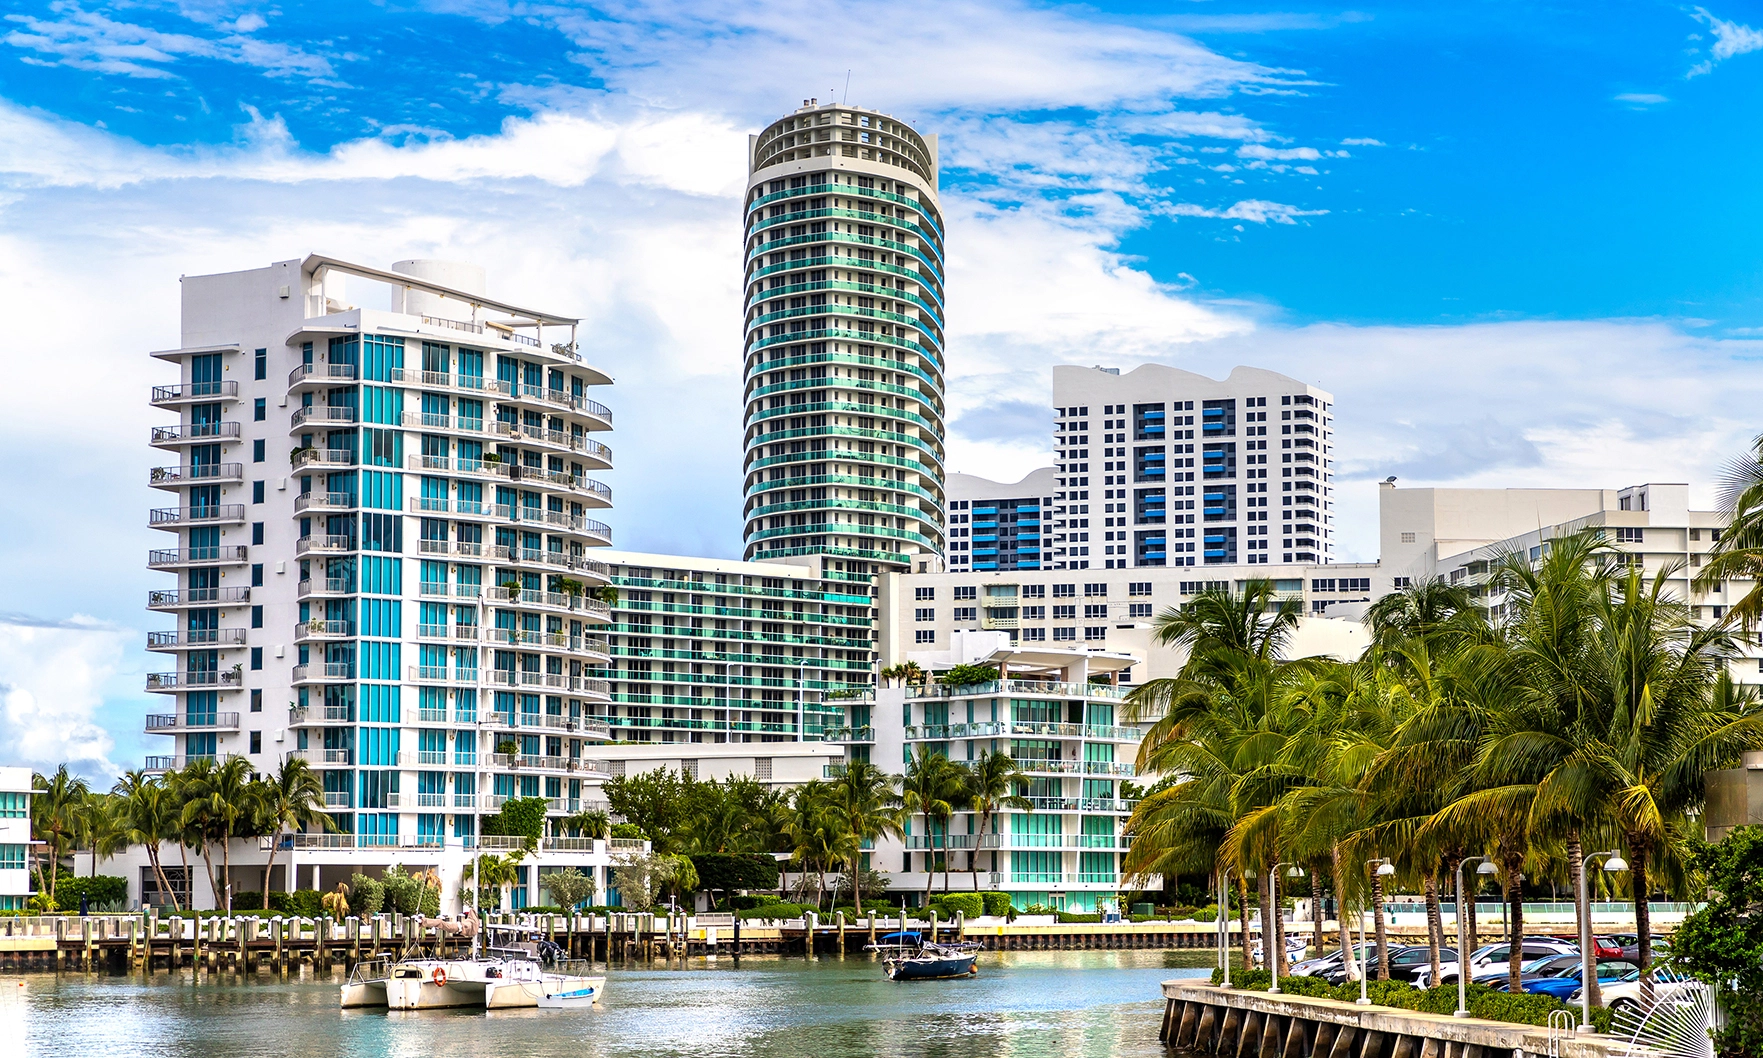 South Florida’s luxury condo market surges